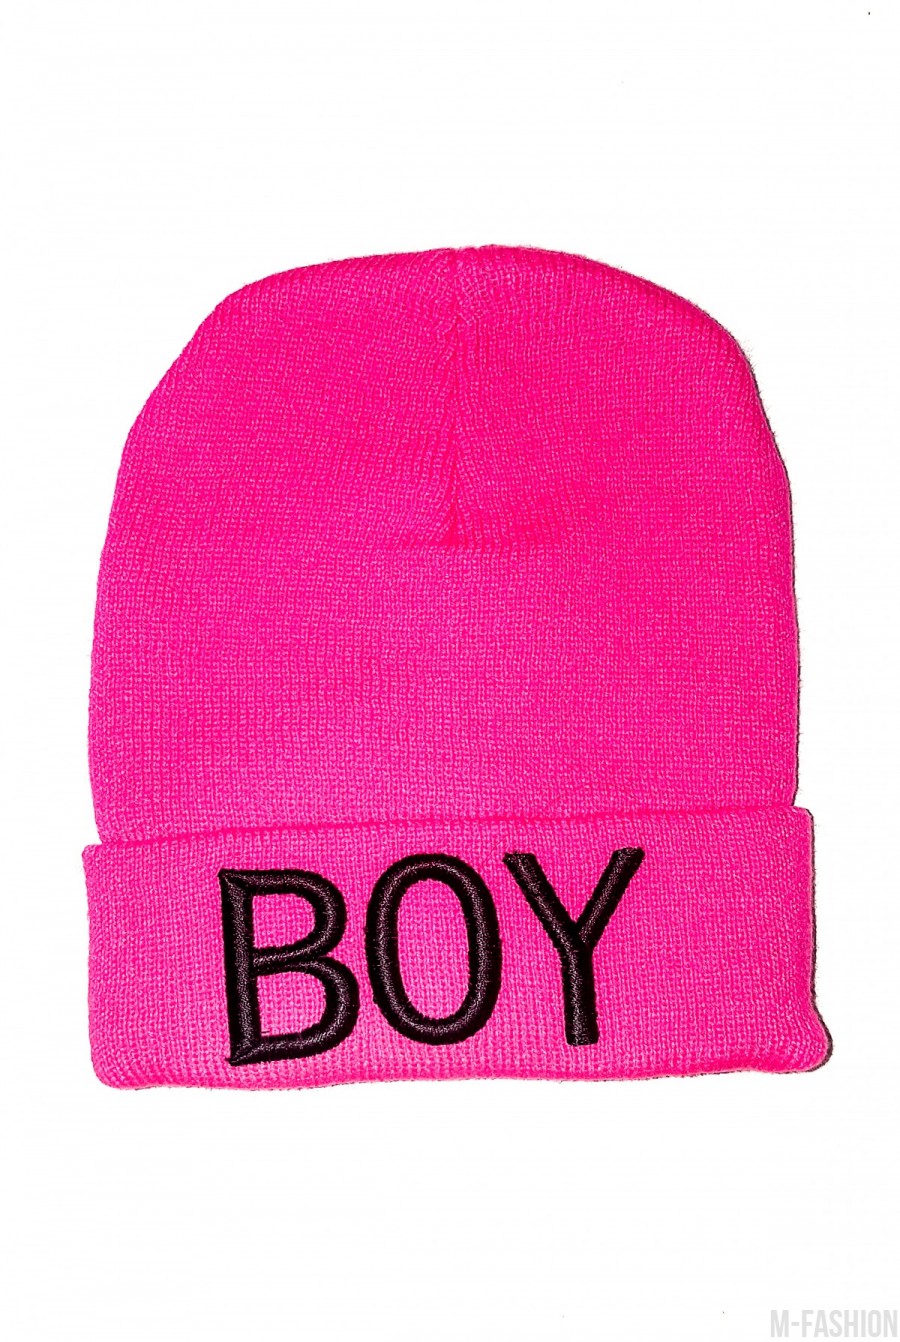 Розовая шапка с черной вышивкой BOY на отвороте - Фото 1